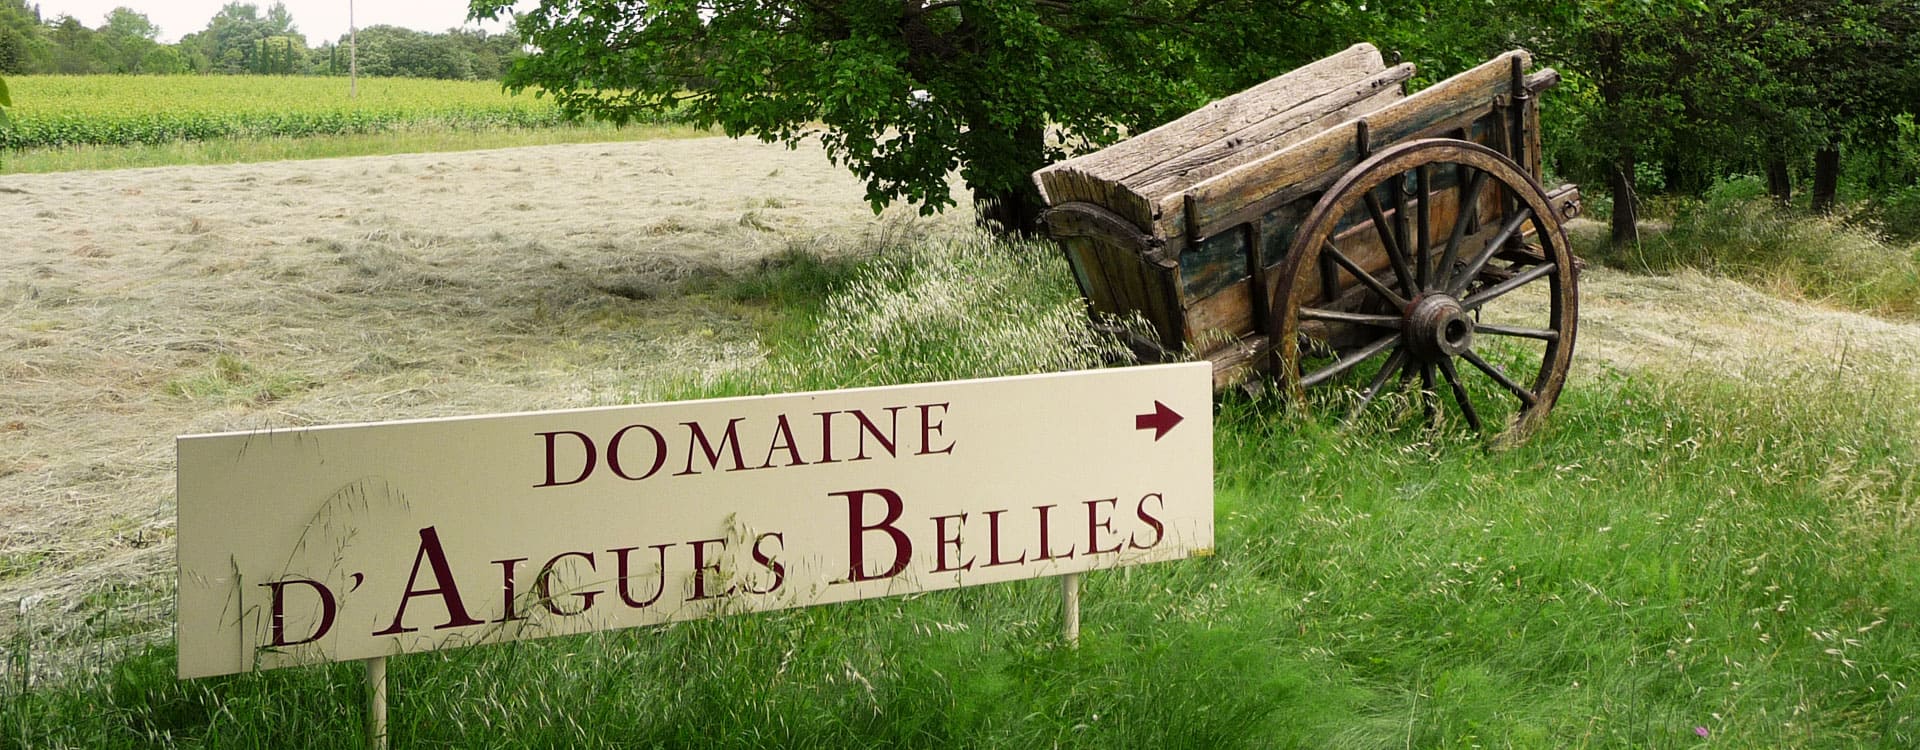 Domaine d'Aigues Belles - Domaine viticole en Languedoc-Roussillon